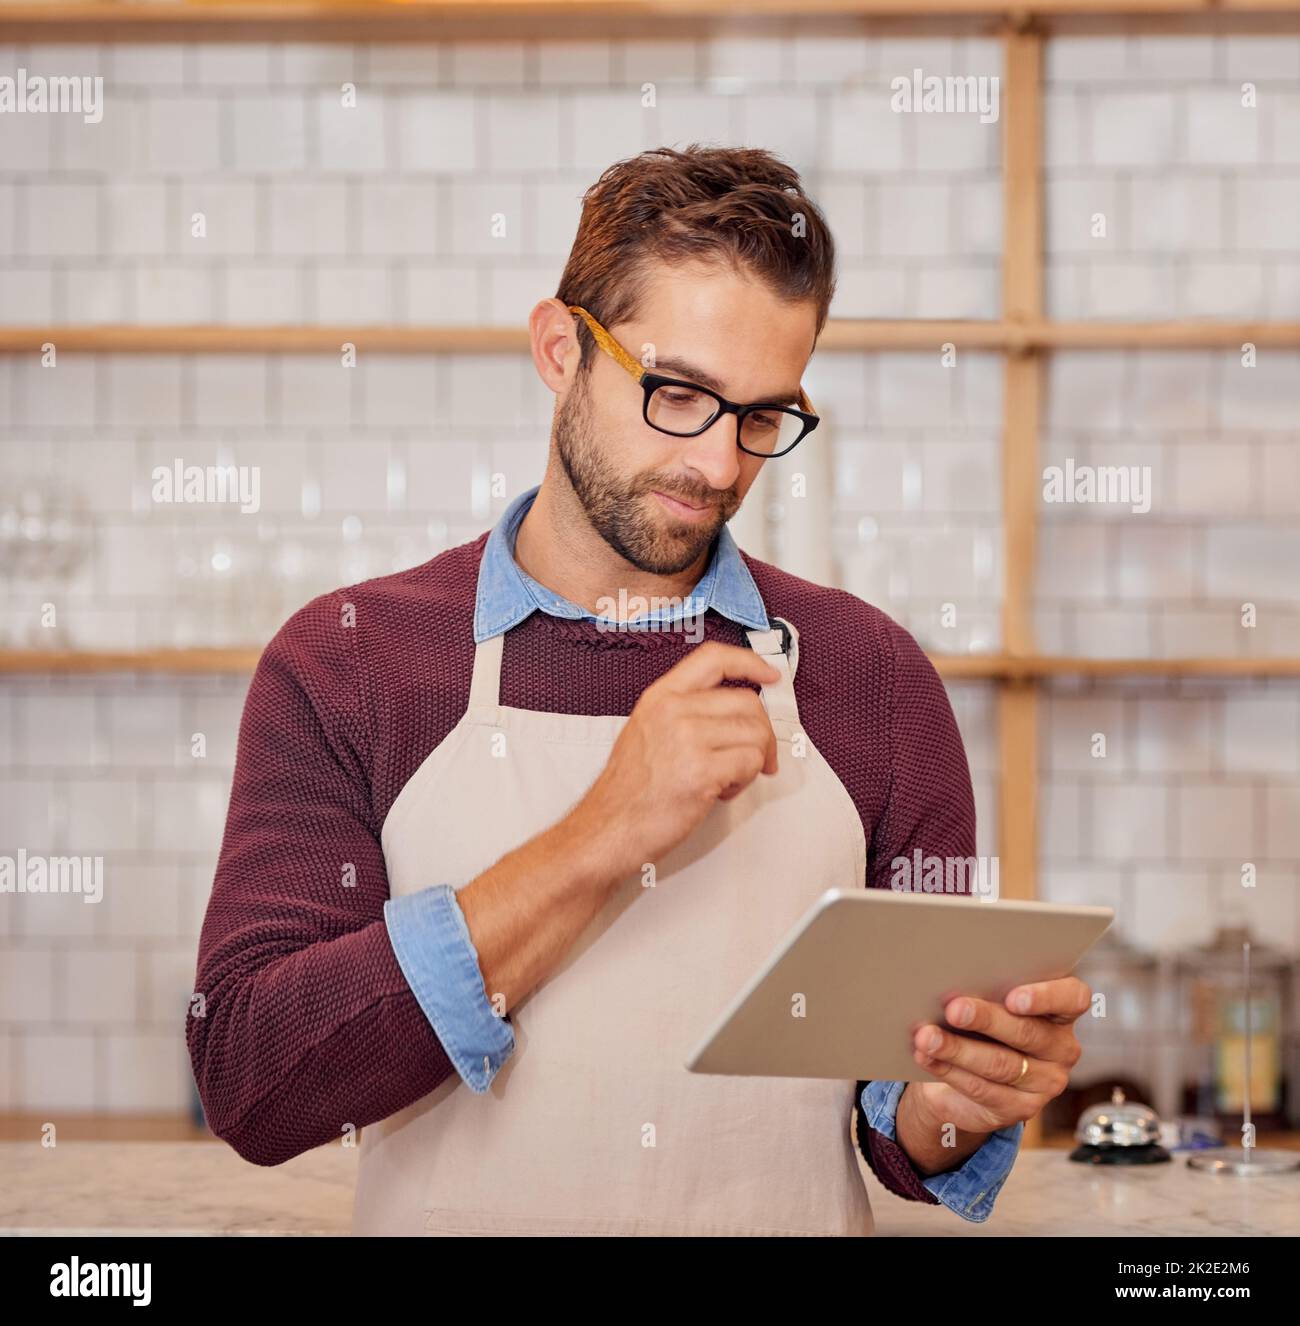 Einige Änderungen am Online-Menü vornehmen. Aufnahme eines glücklichen jungen Geschäftsbesitzers, der ein Tablet benutzte, während er in seinem Café stand. Stockfoto